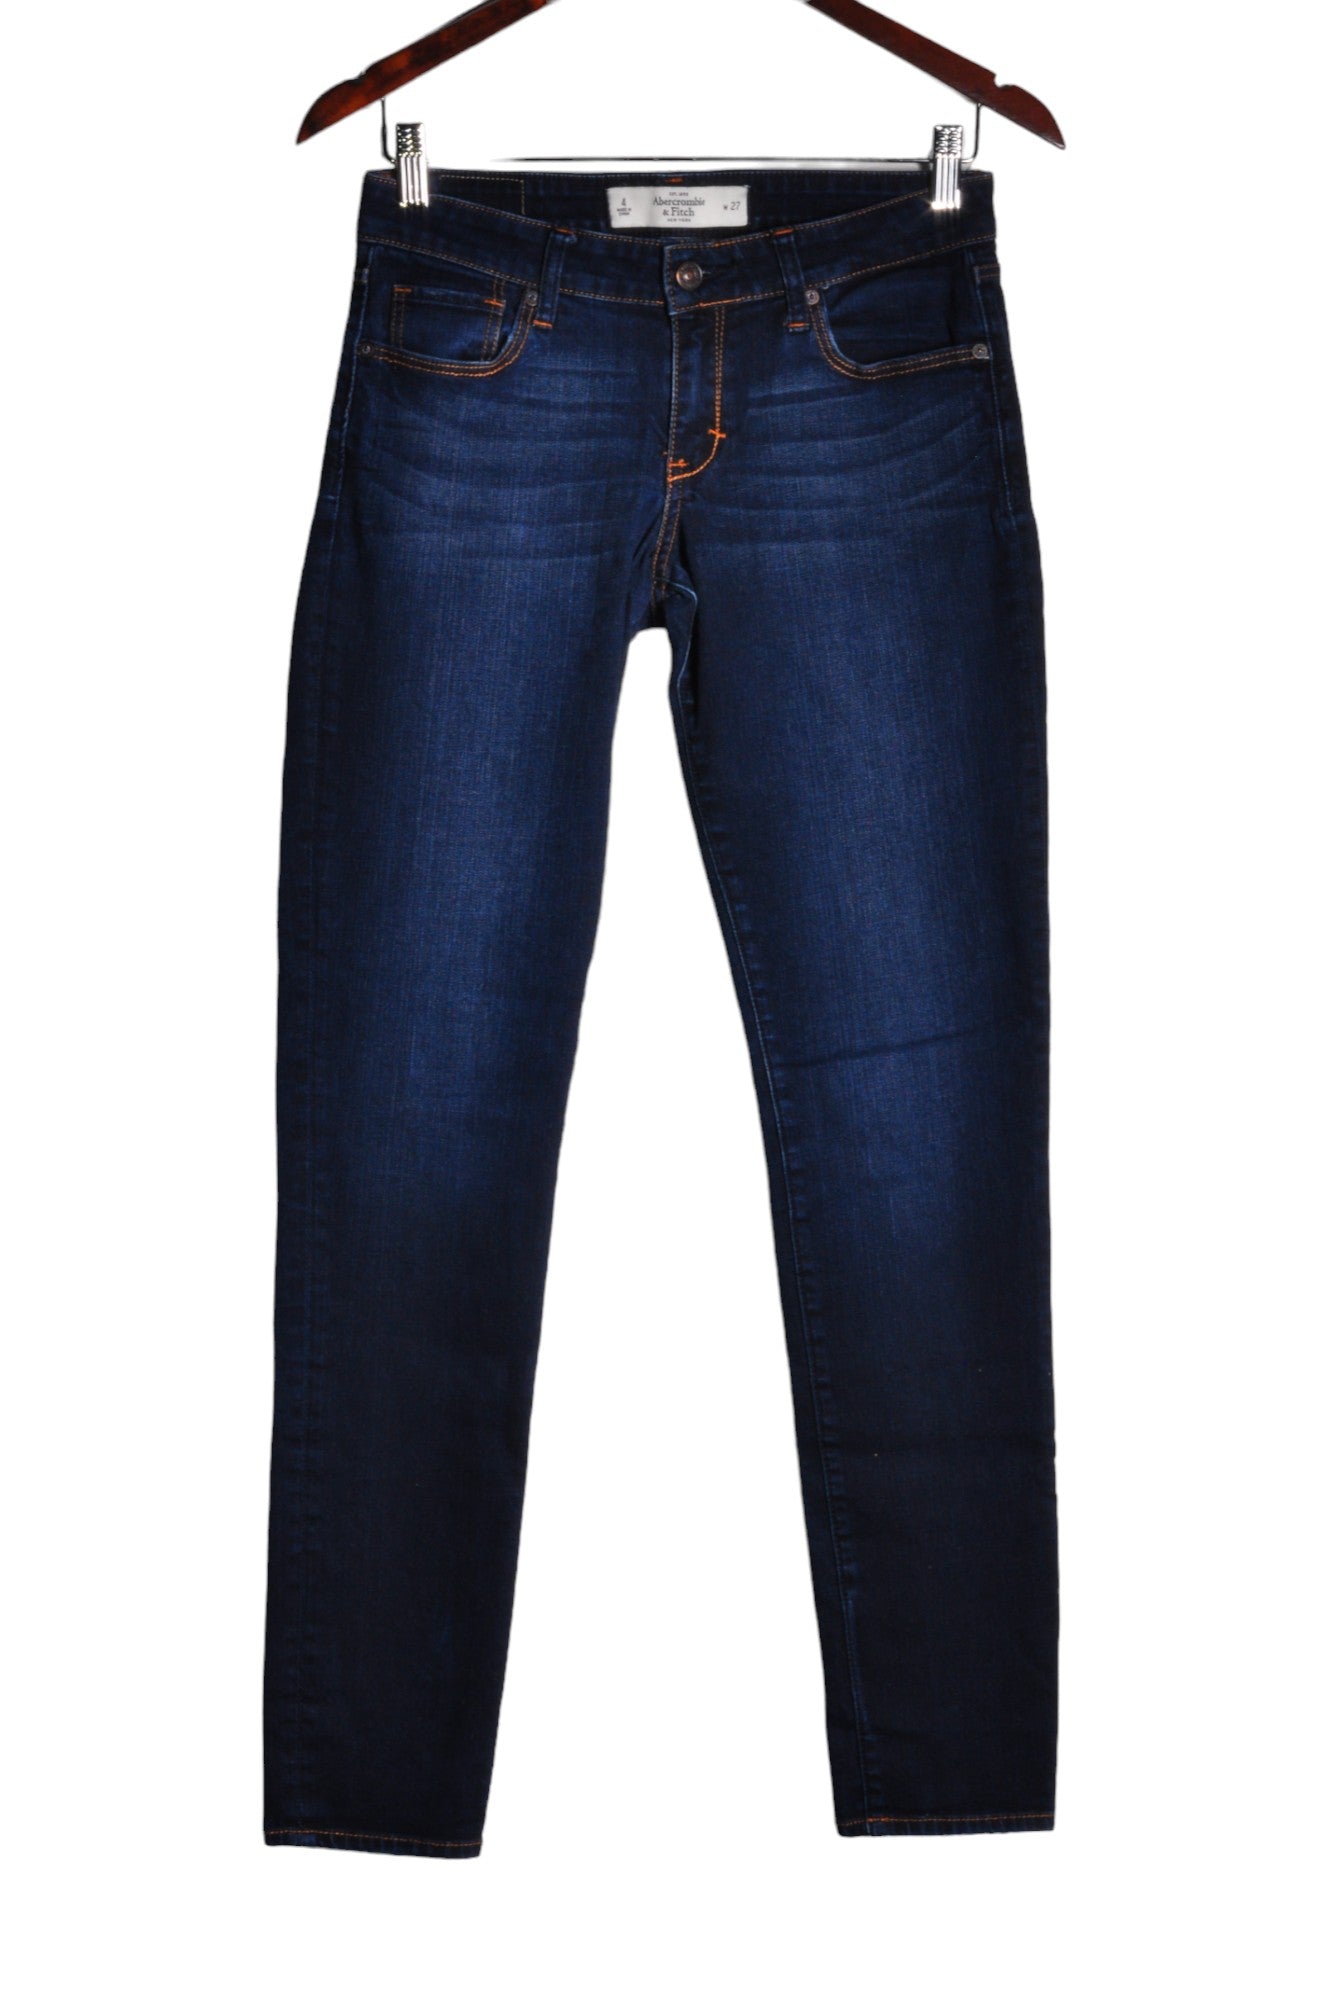 ABERCROMBIE & FITCH Women Straight-Legged Jeans Regular fit in Blue - Size 27 | 37.6 $ KOOP